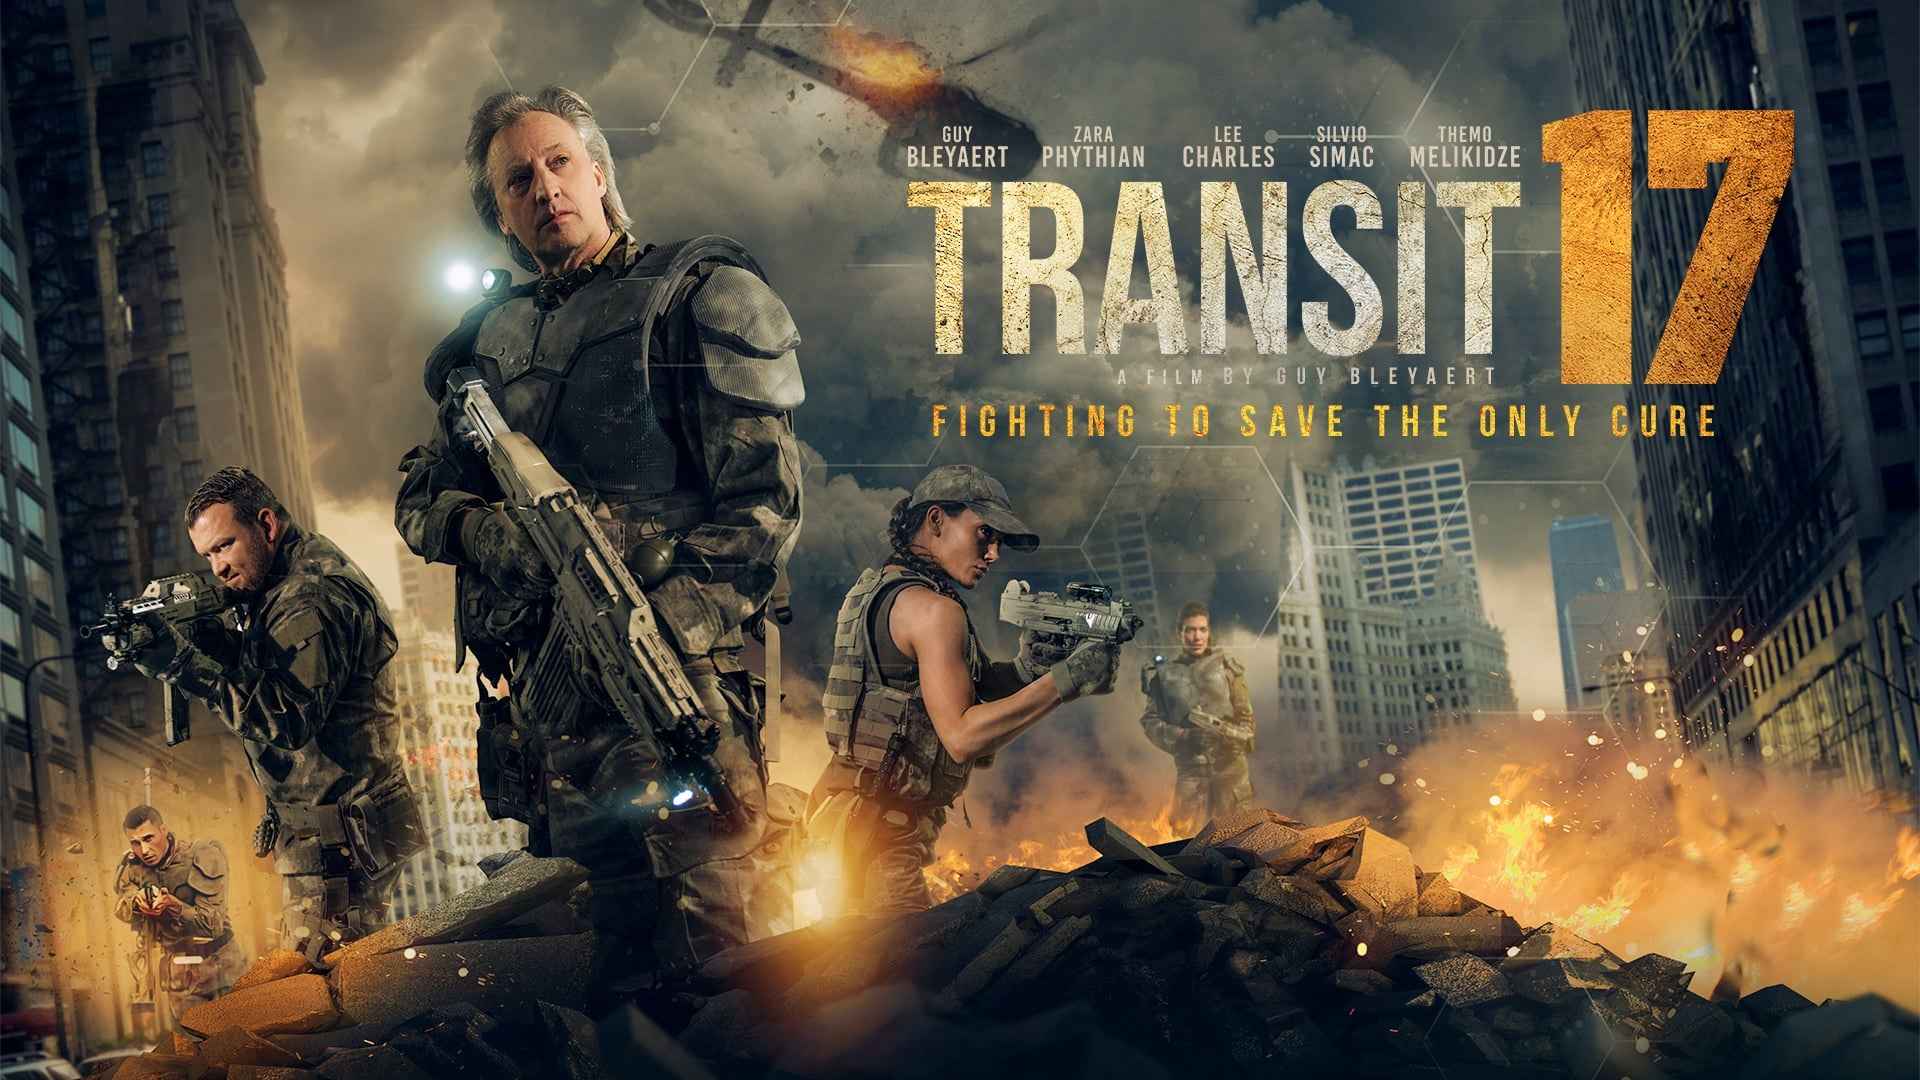 Transit 17 starring Zara Marke